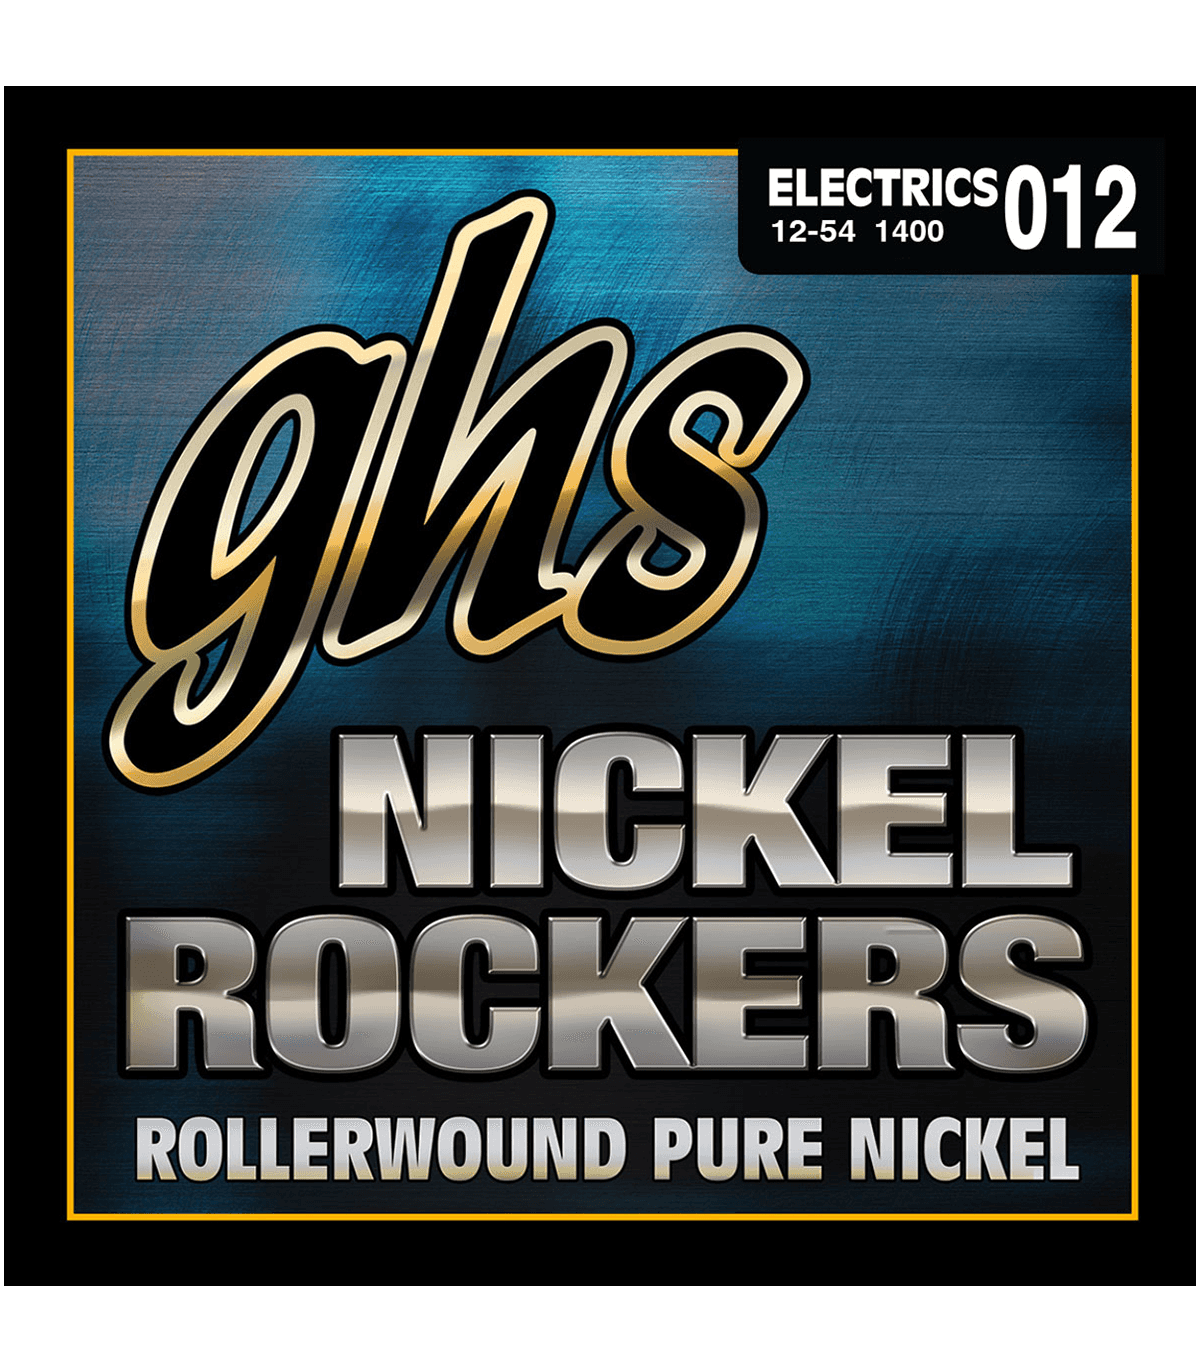 Electric (6) Nanoweb Nickel Plated Steel 09-42 - jeu de 6 cordes Cordes  guitare électrique Elixir